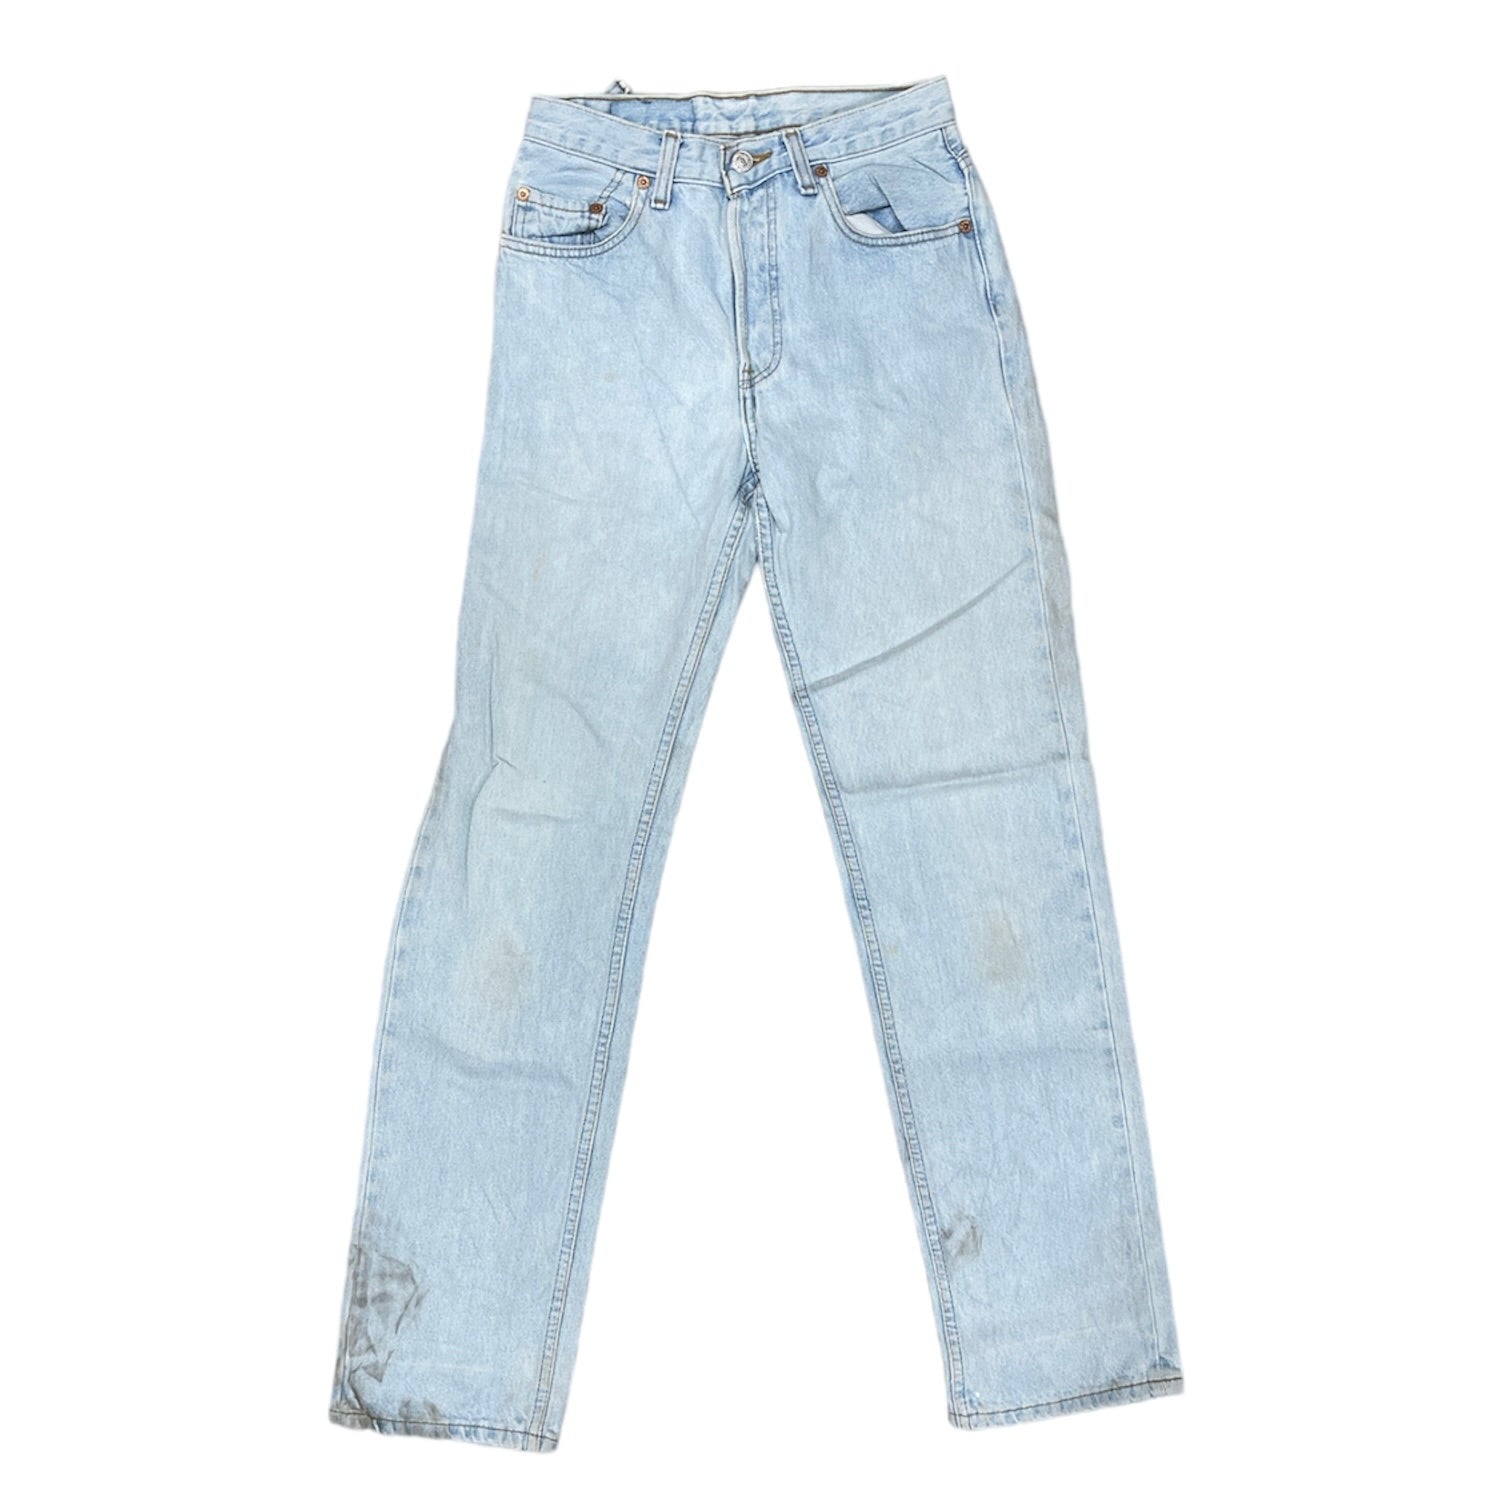 Vintage Levis 501 Light Blue Jeans (W28/32)